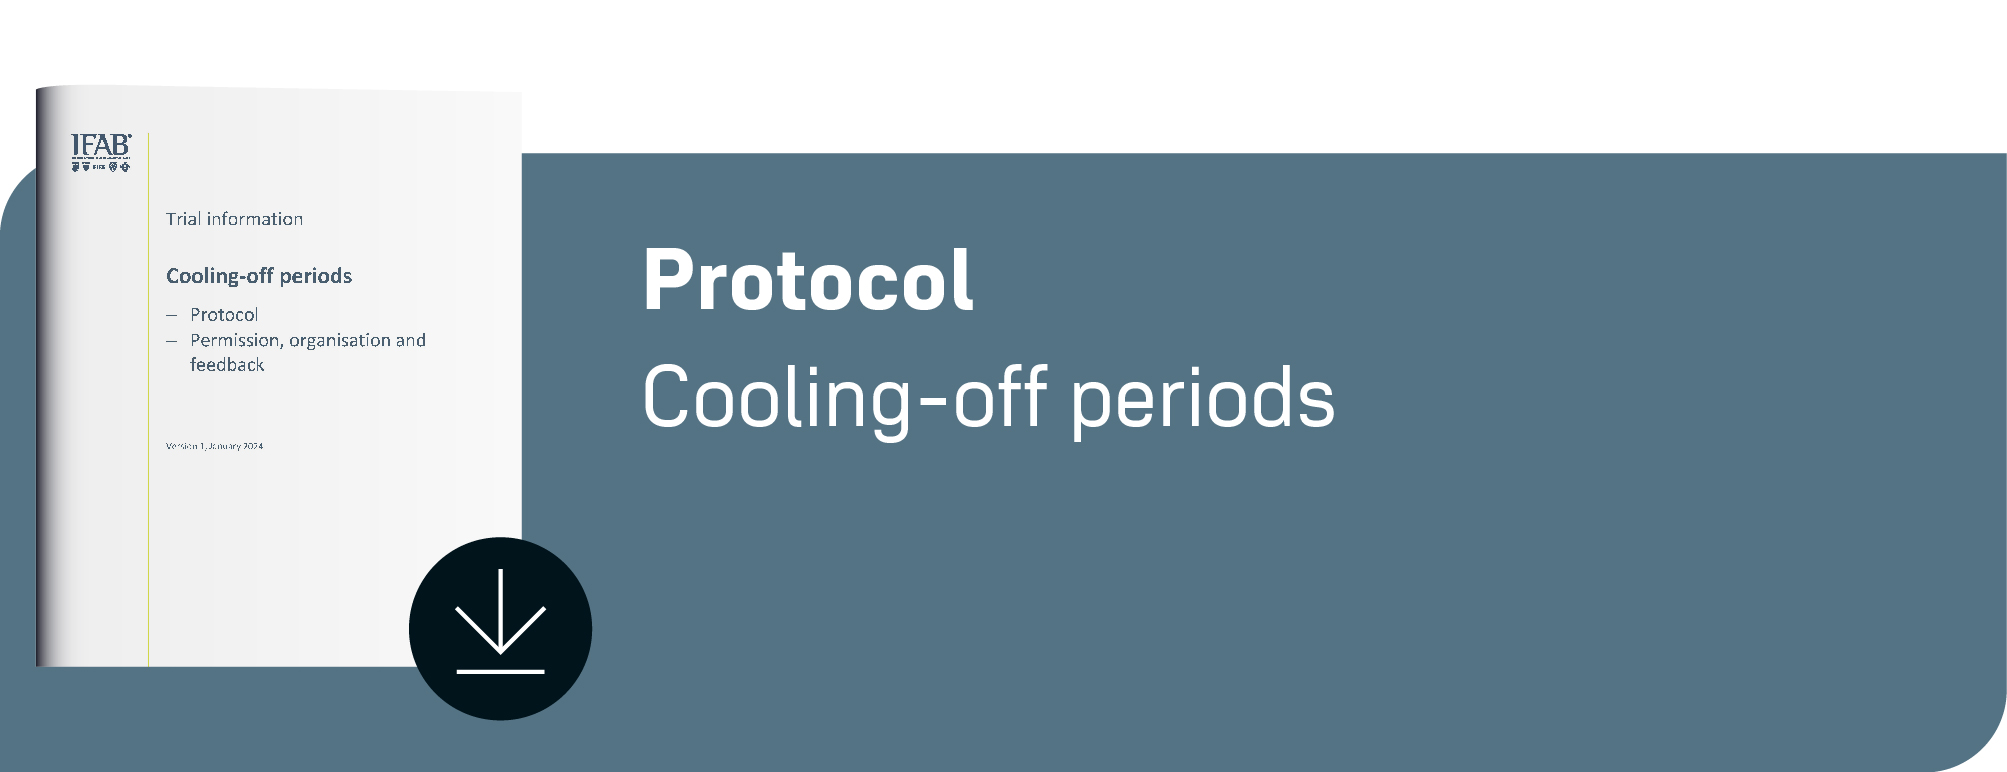 Protocol A